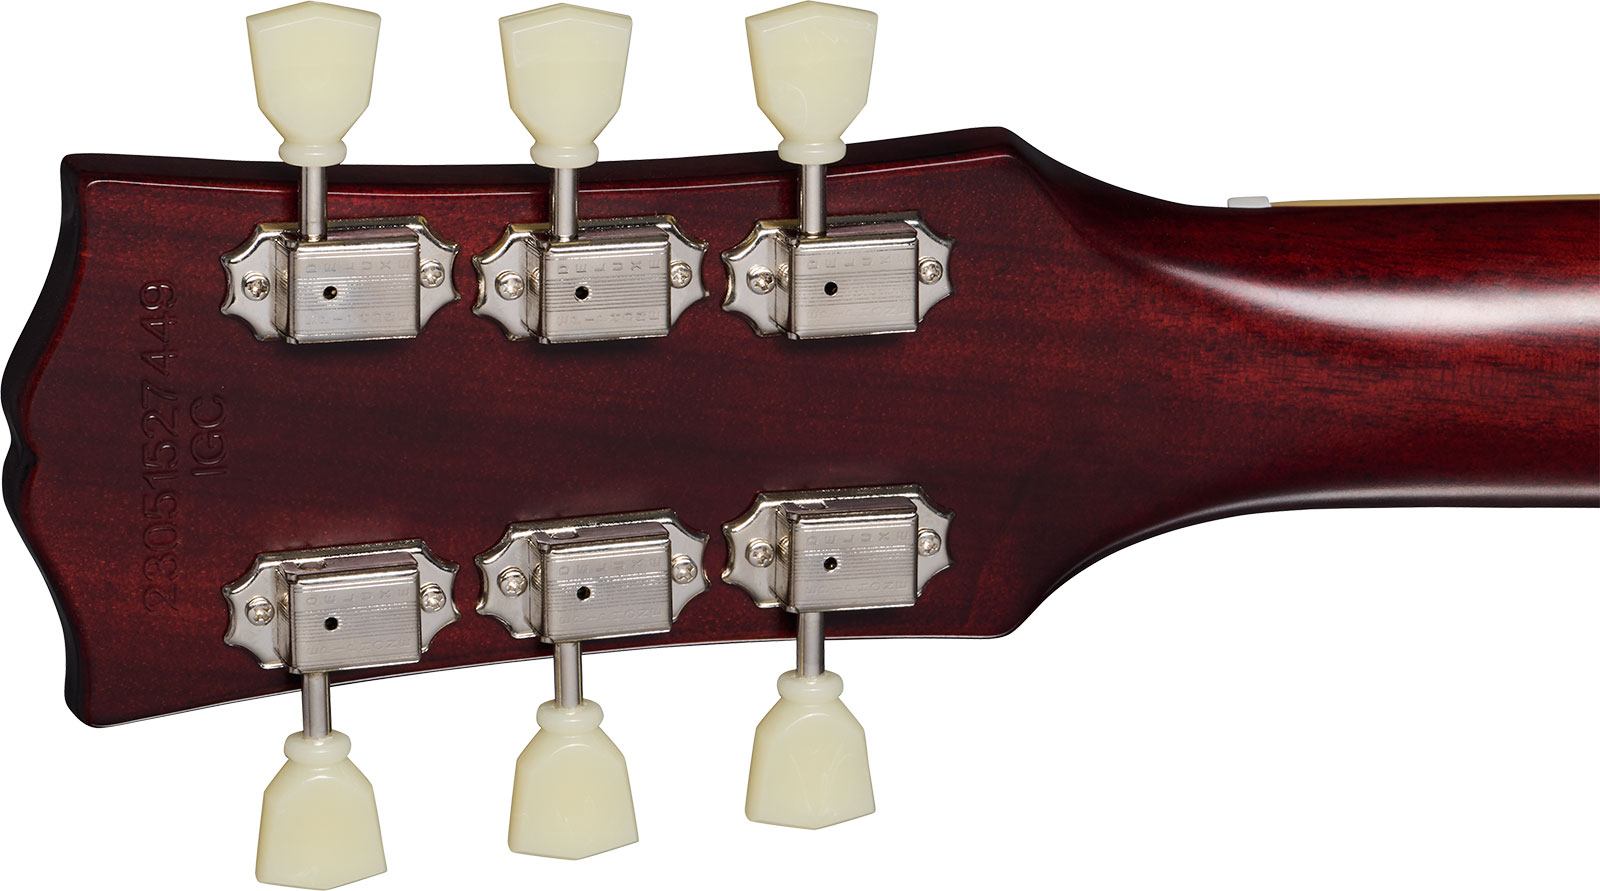 Epiphone 1959 Les Paul Standard Inspired By 2h Gibson Ht Lau - Vos Tobacco Burst - Guitare Électrique Single Cut - Variation 4